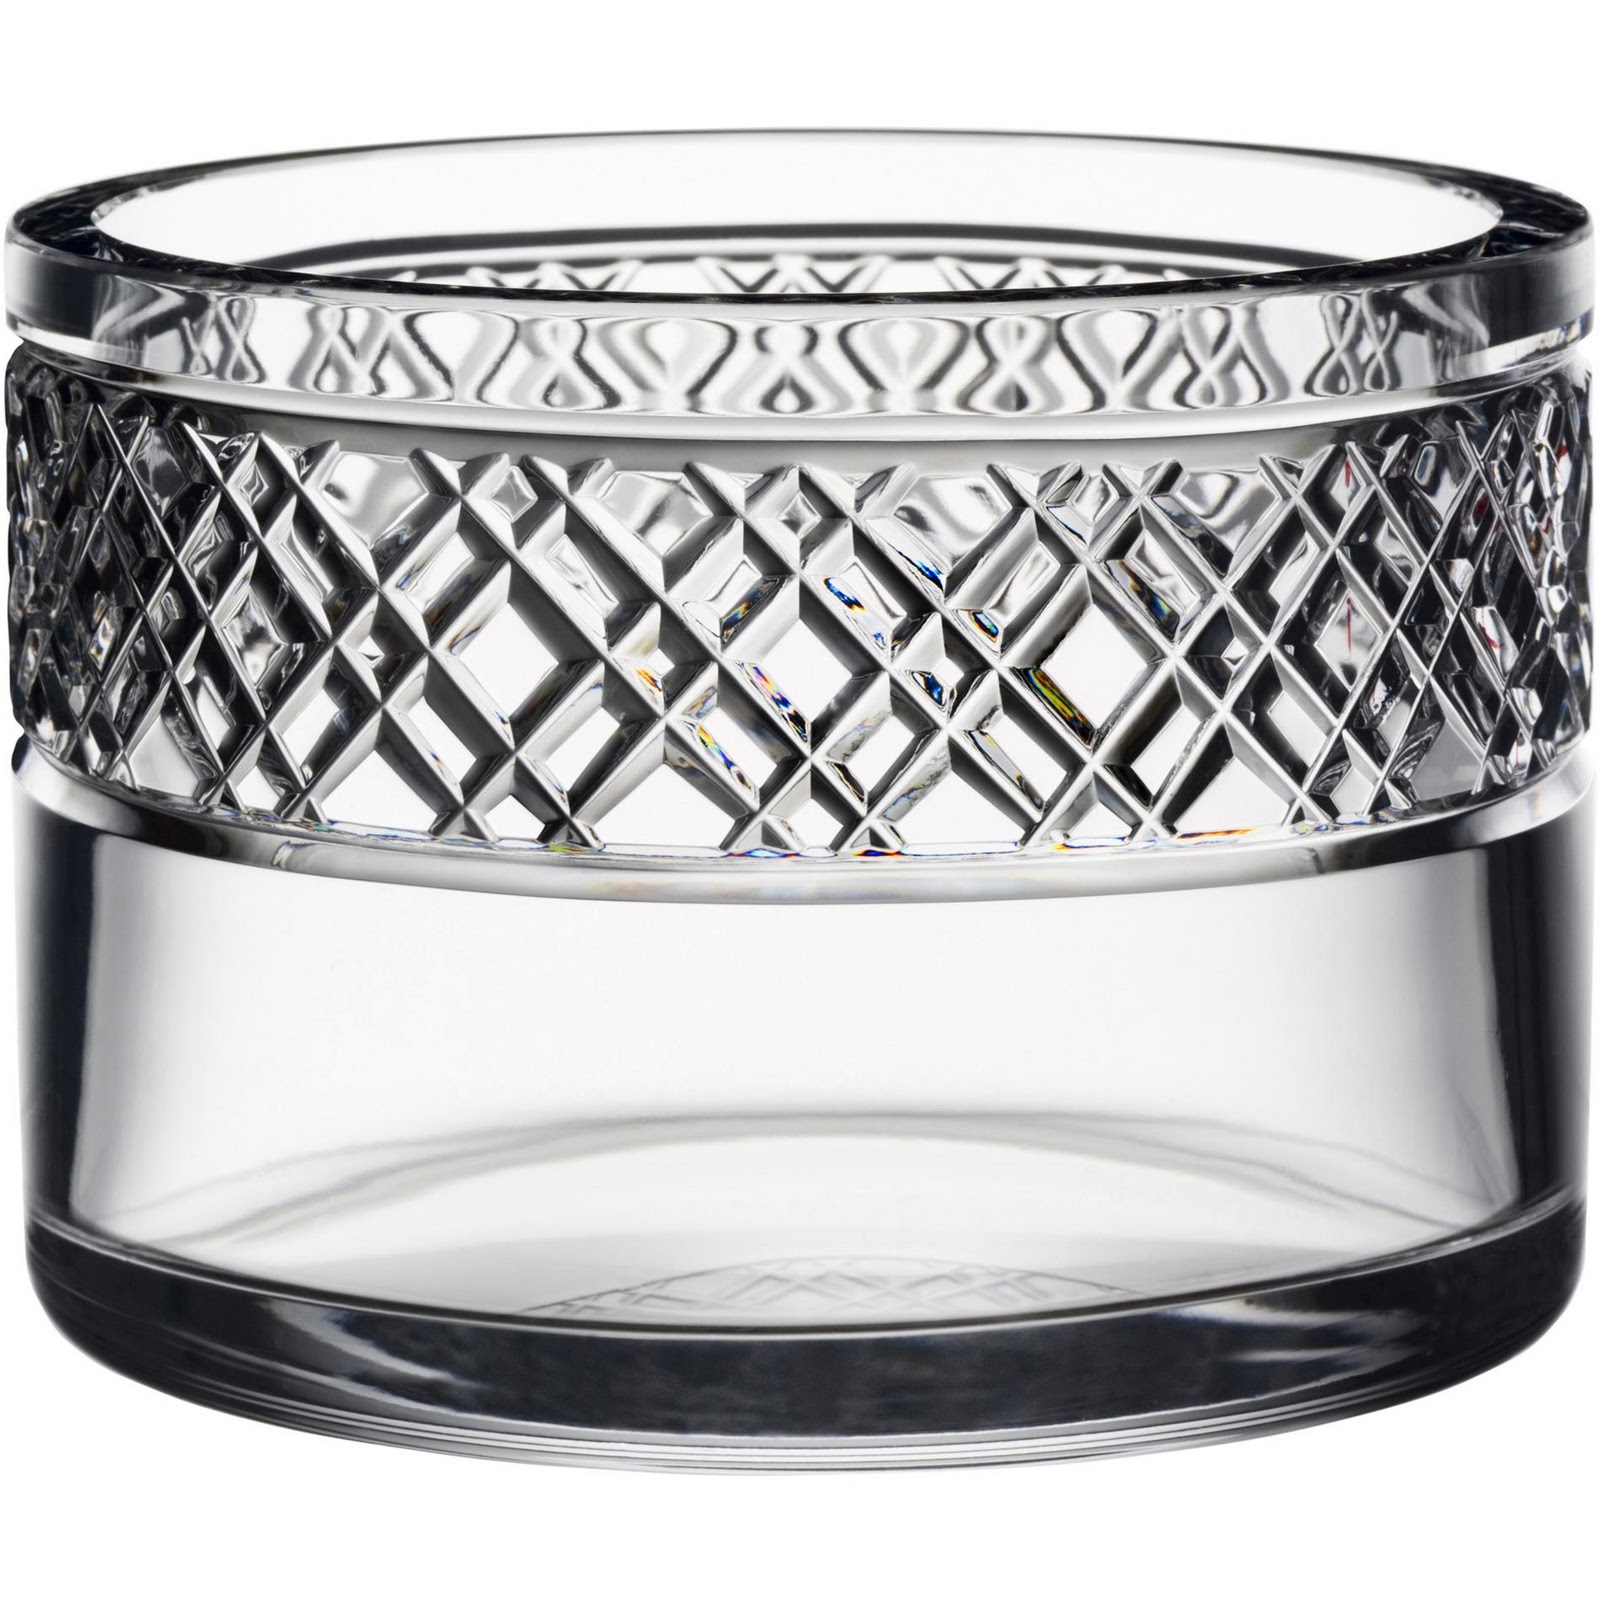 Every glass bowl has a design